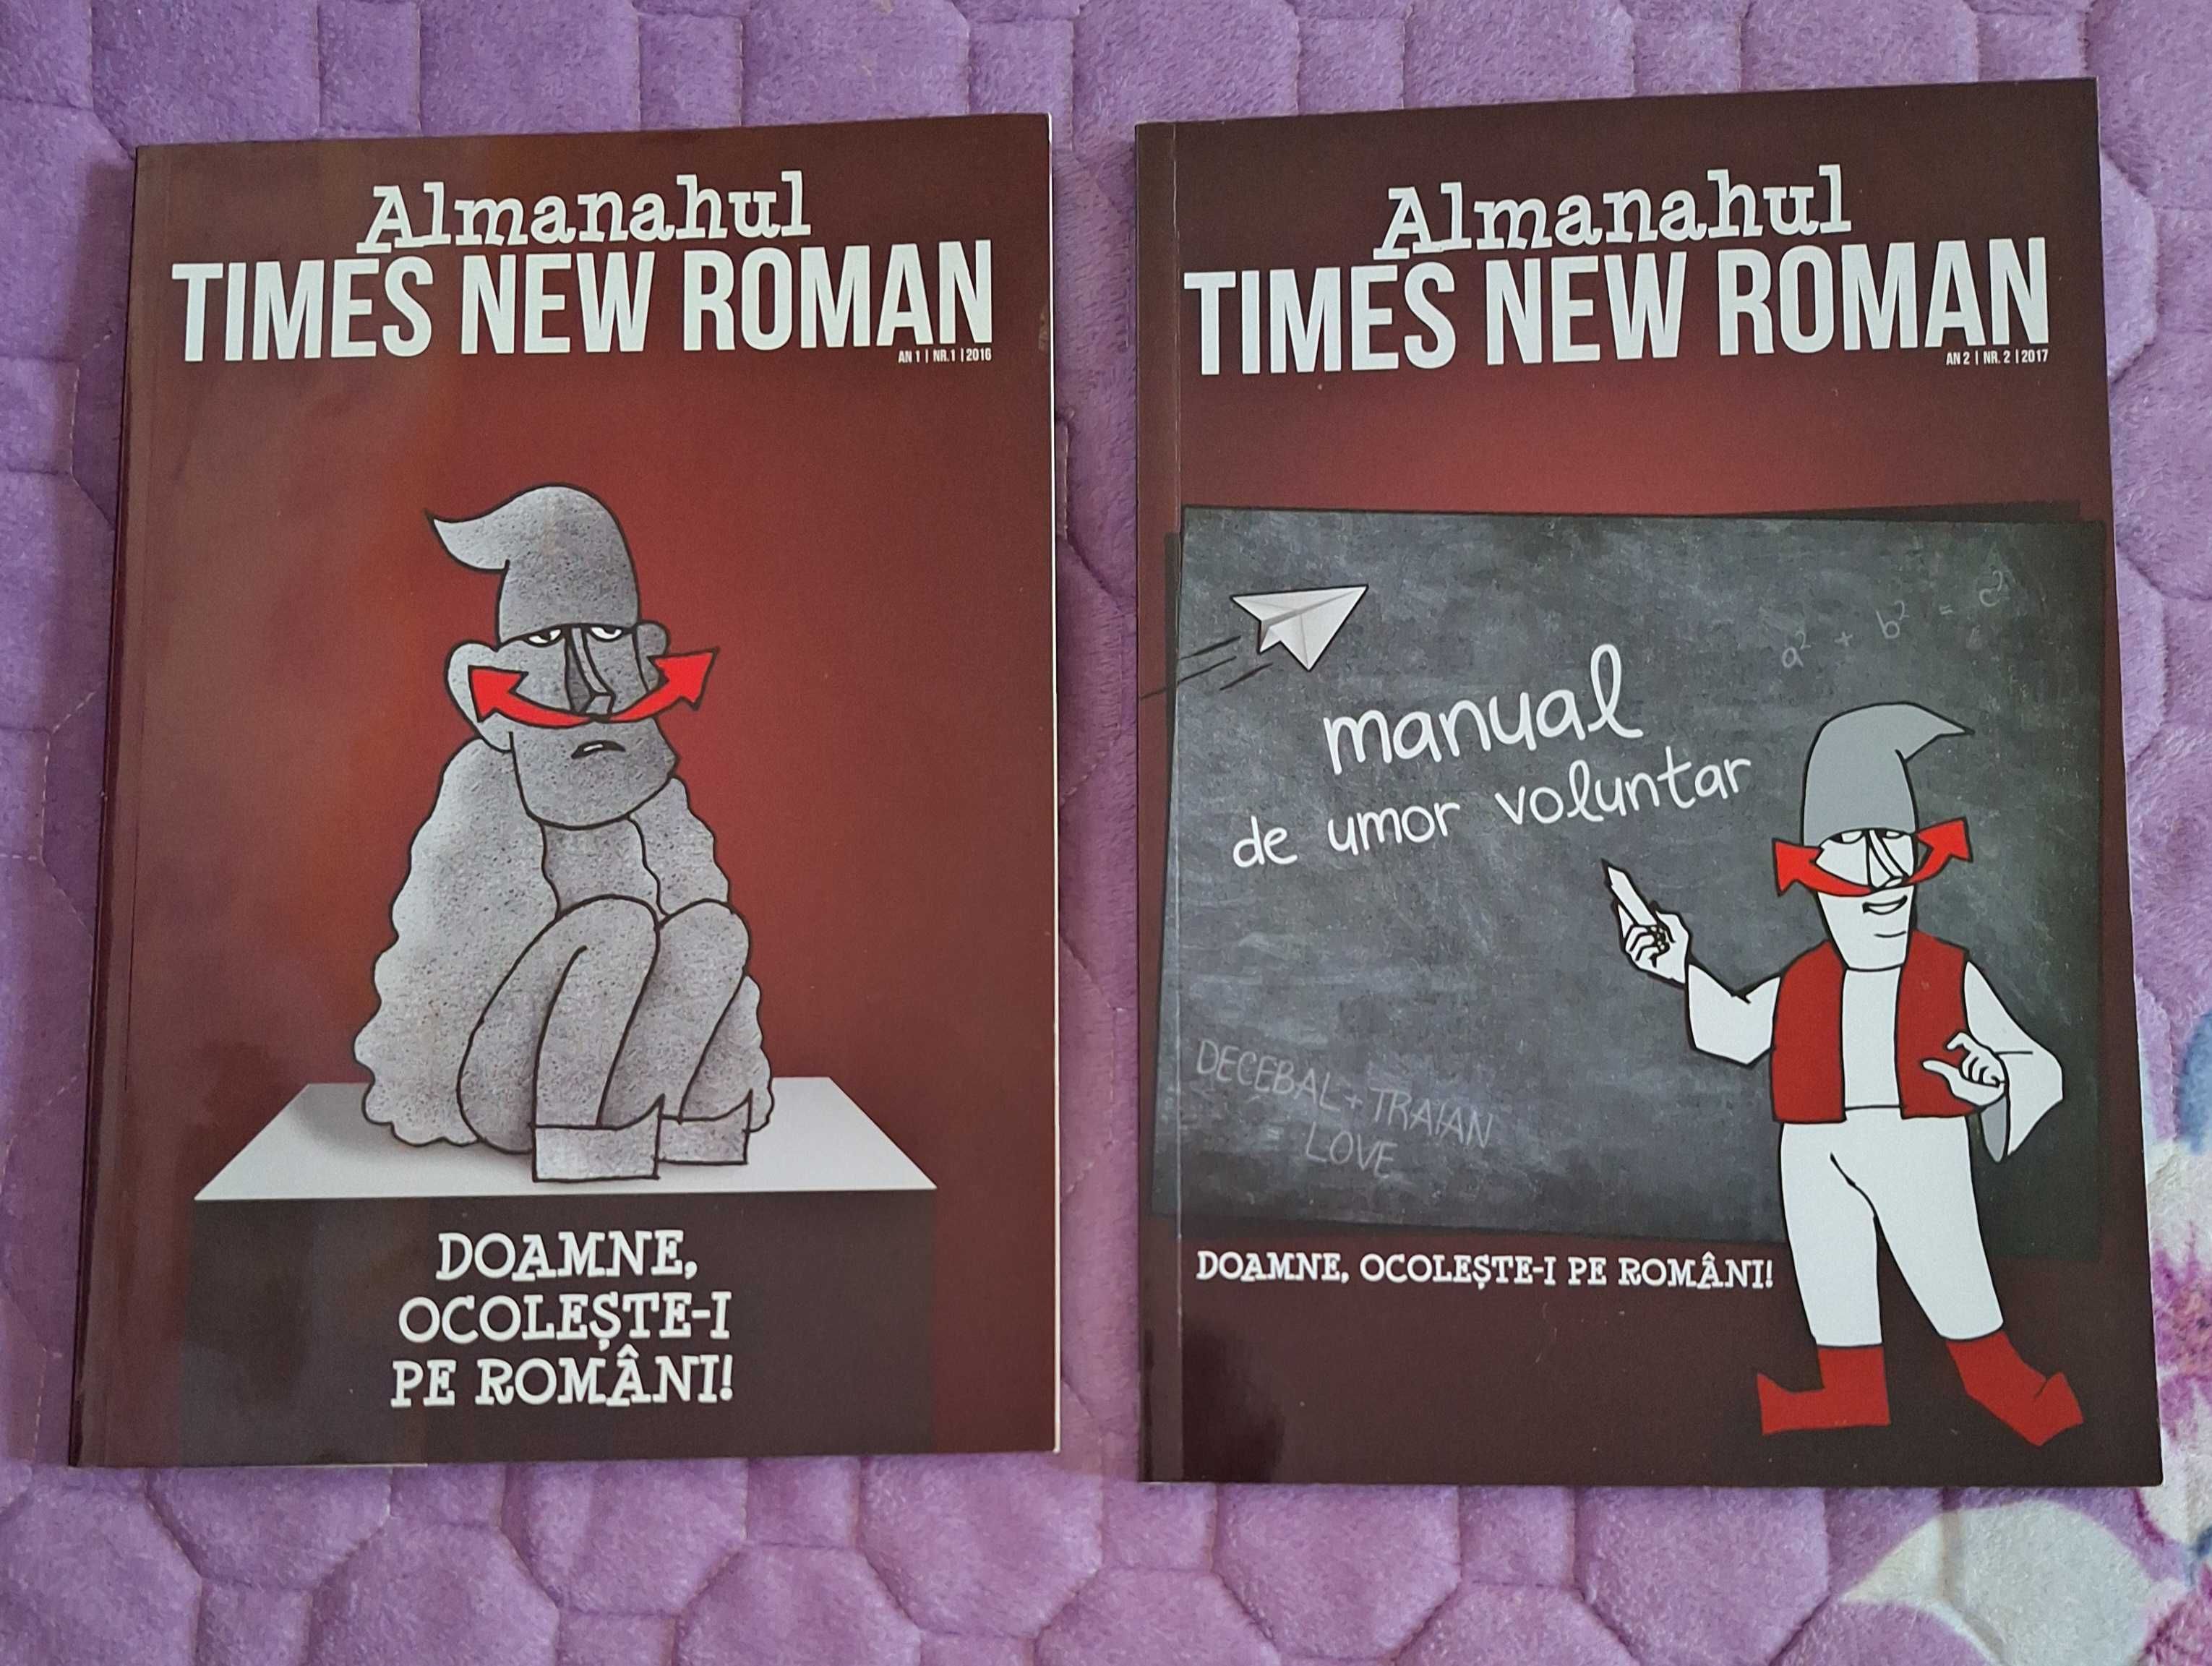 Times New Roman Almanah